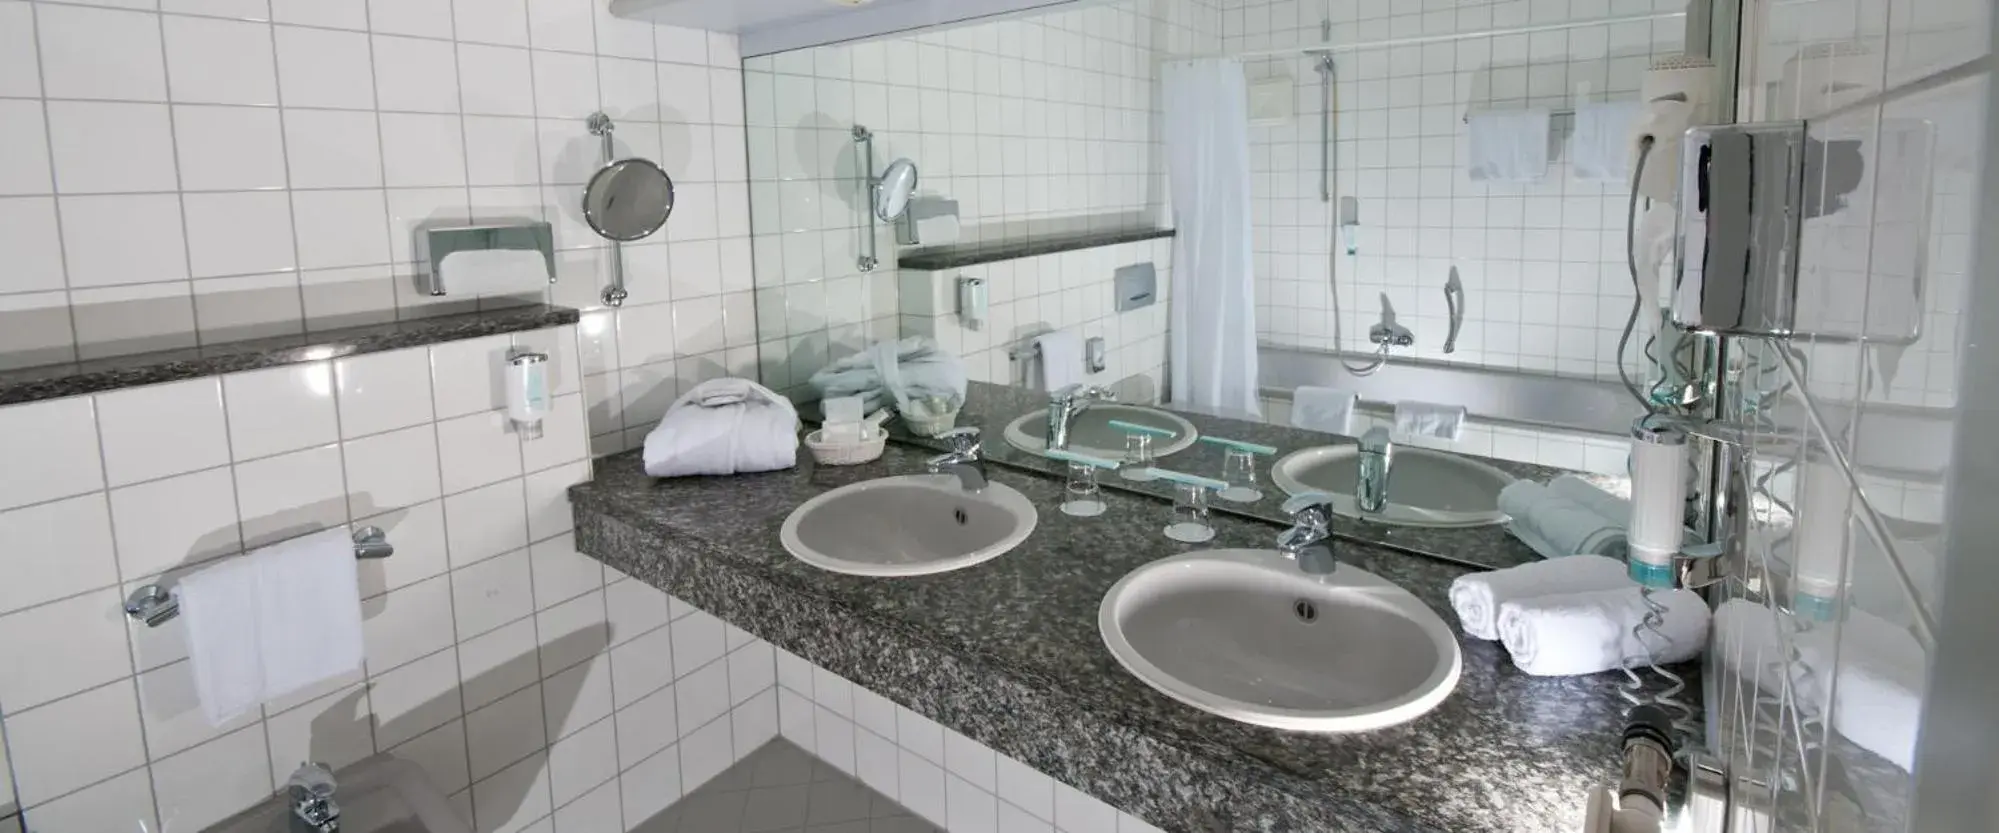 Bathroom in Hotel Ambiente Walldorf